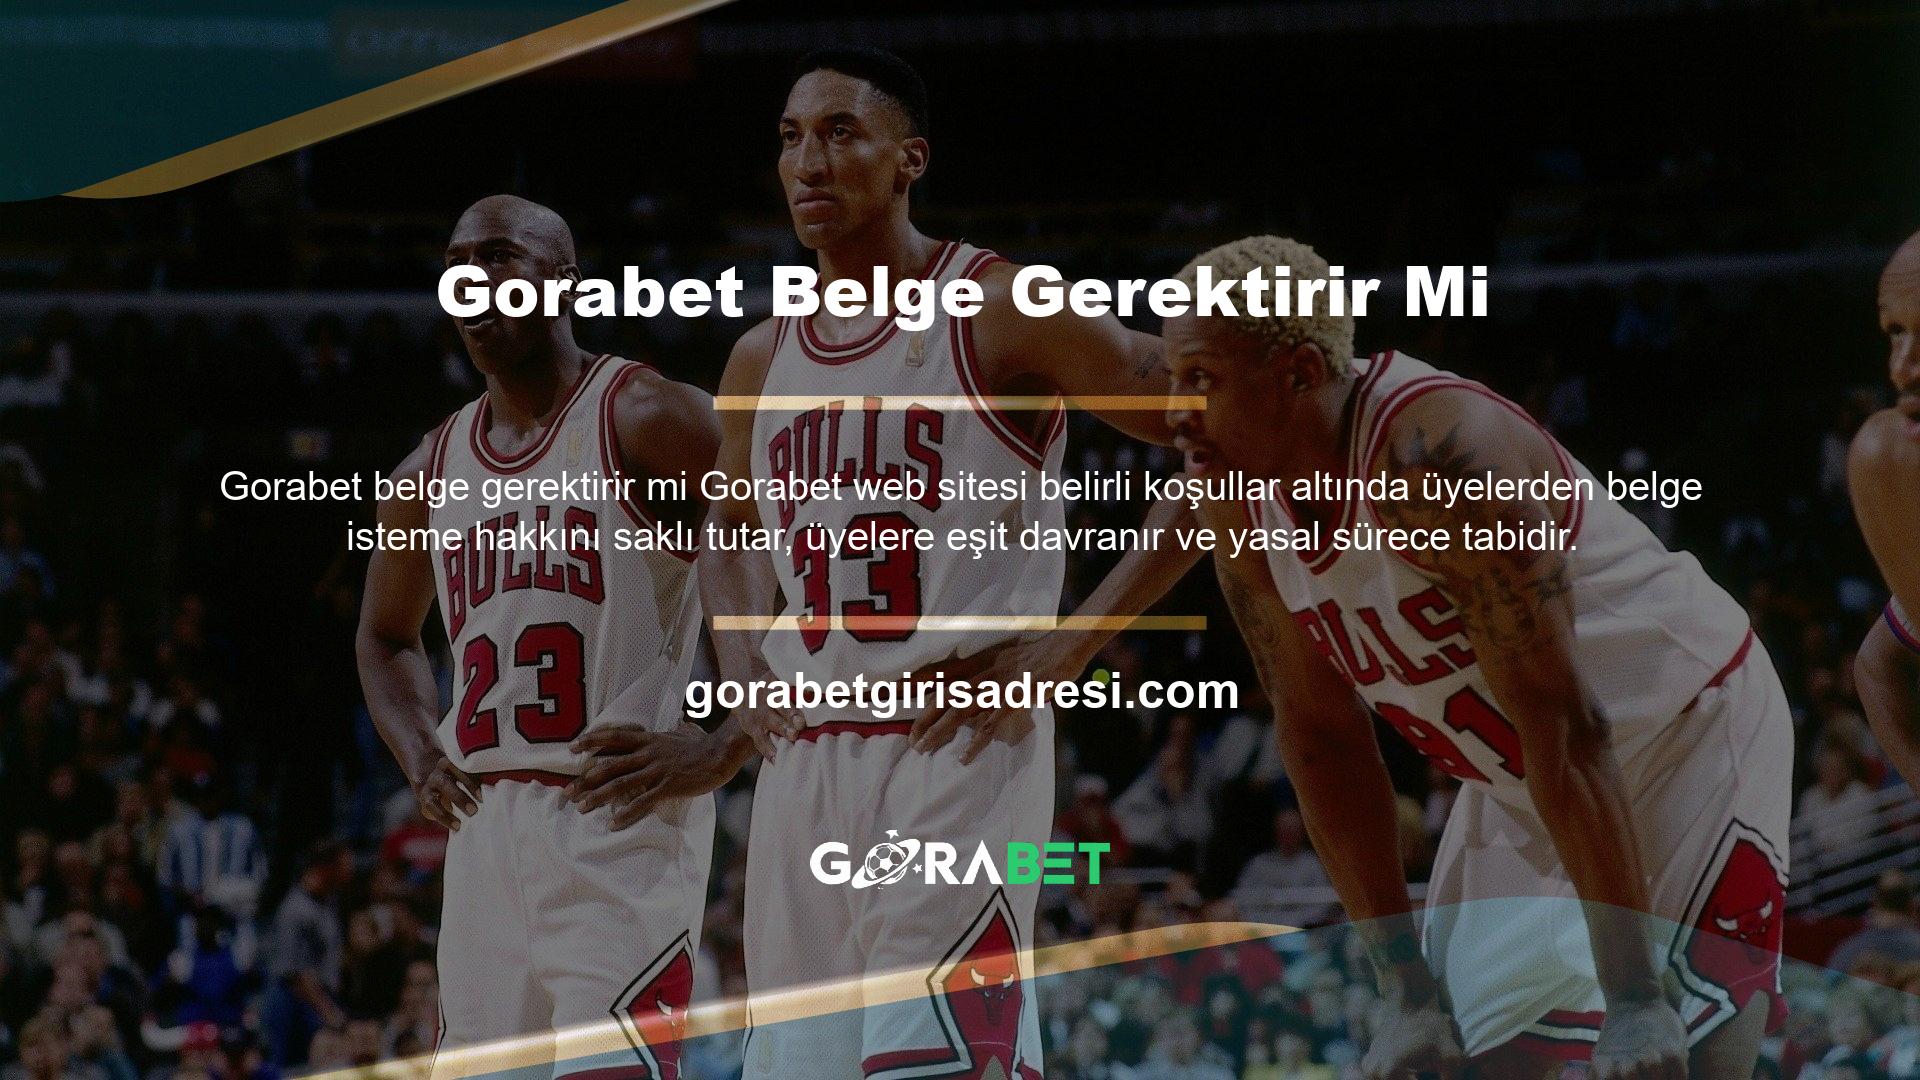 Gorabet web sitesi belirli koşullar altında üyelerden belge talep etme hakkını saklı tutar